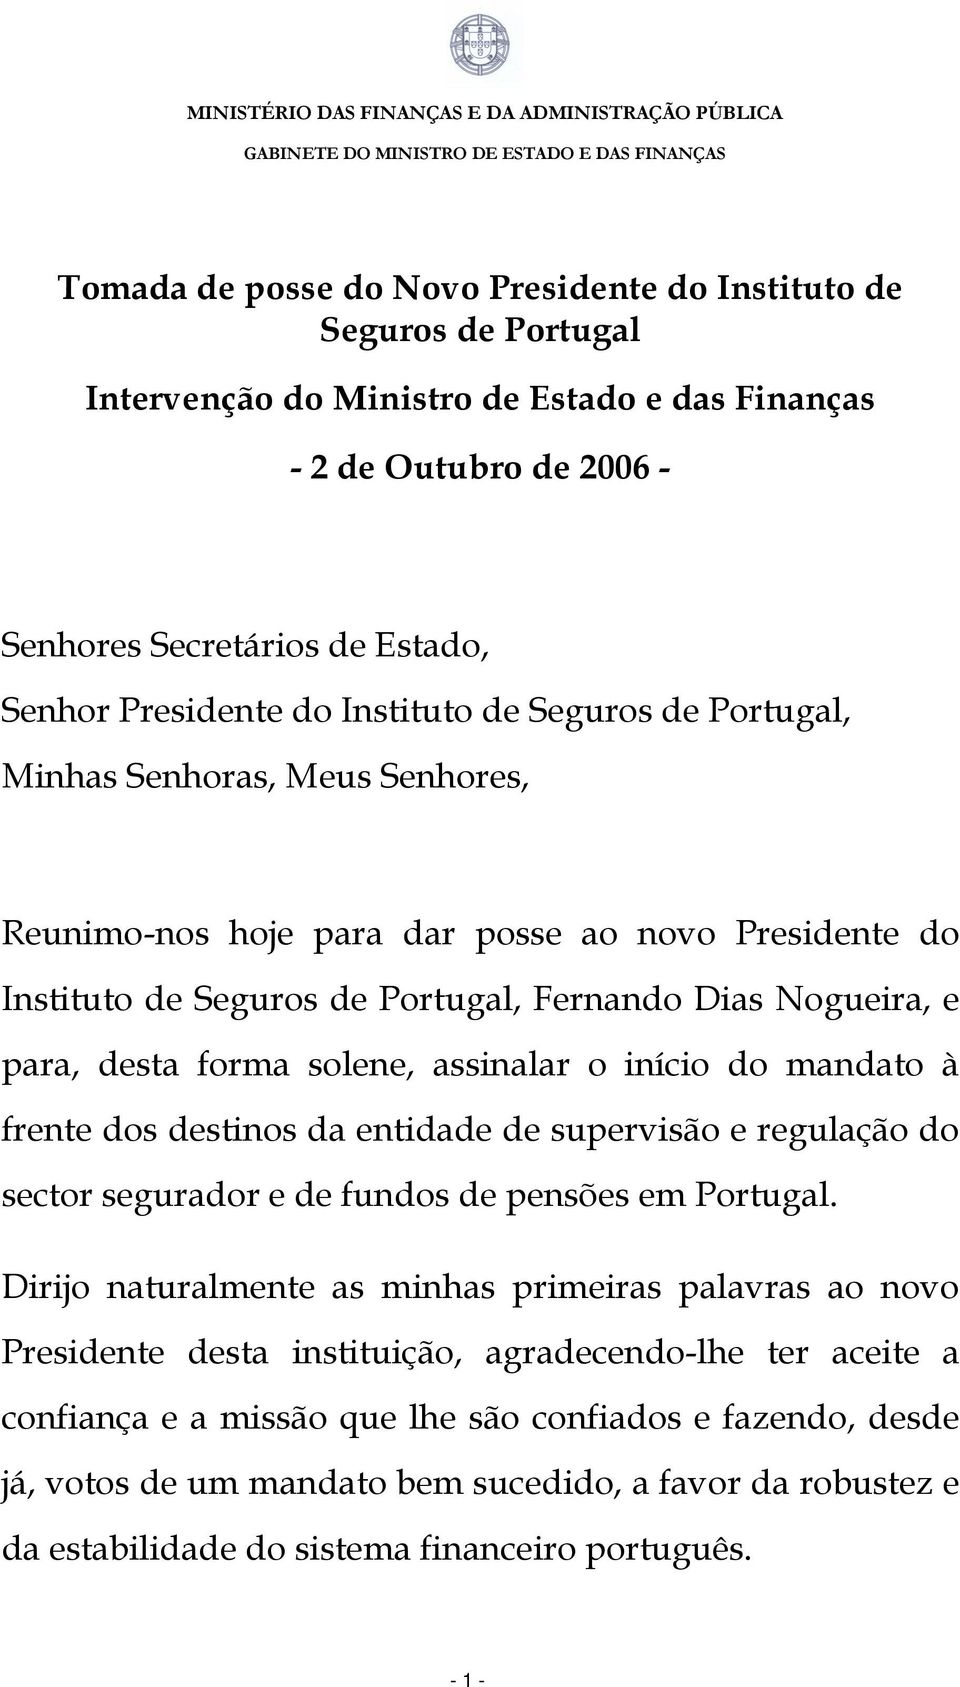 solene, assinalar o início do mandato à frente dos destinos da entidade de supervisão e regulação do sector segurador e de fundos de pensões em Portugal.